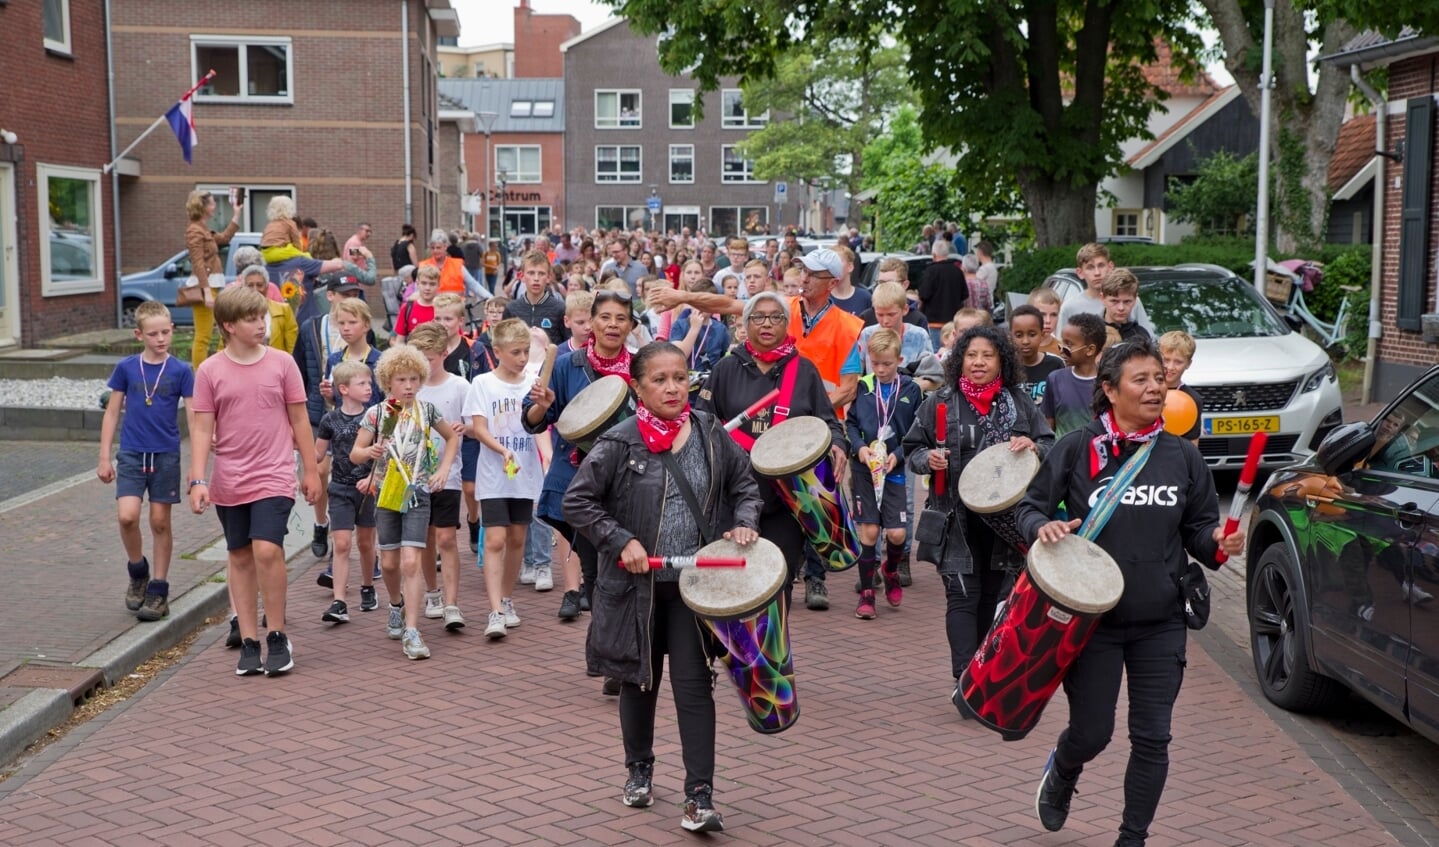 Avondvierdaagse in Wierden populairder dan ooit: vrijdag ruim 1.300 deelnemers